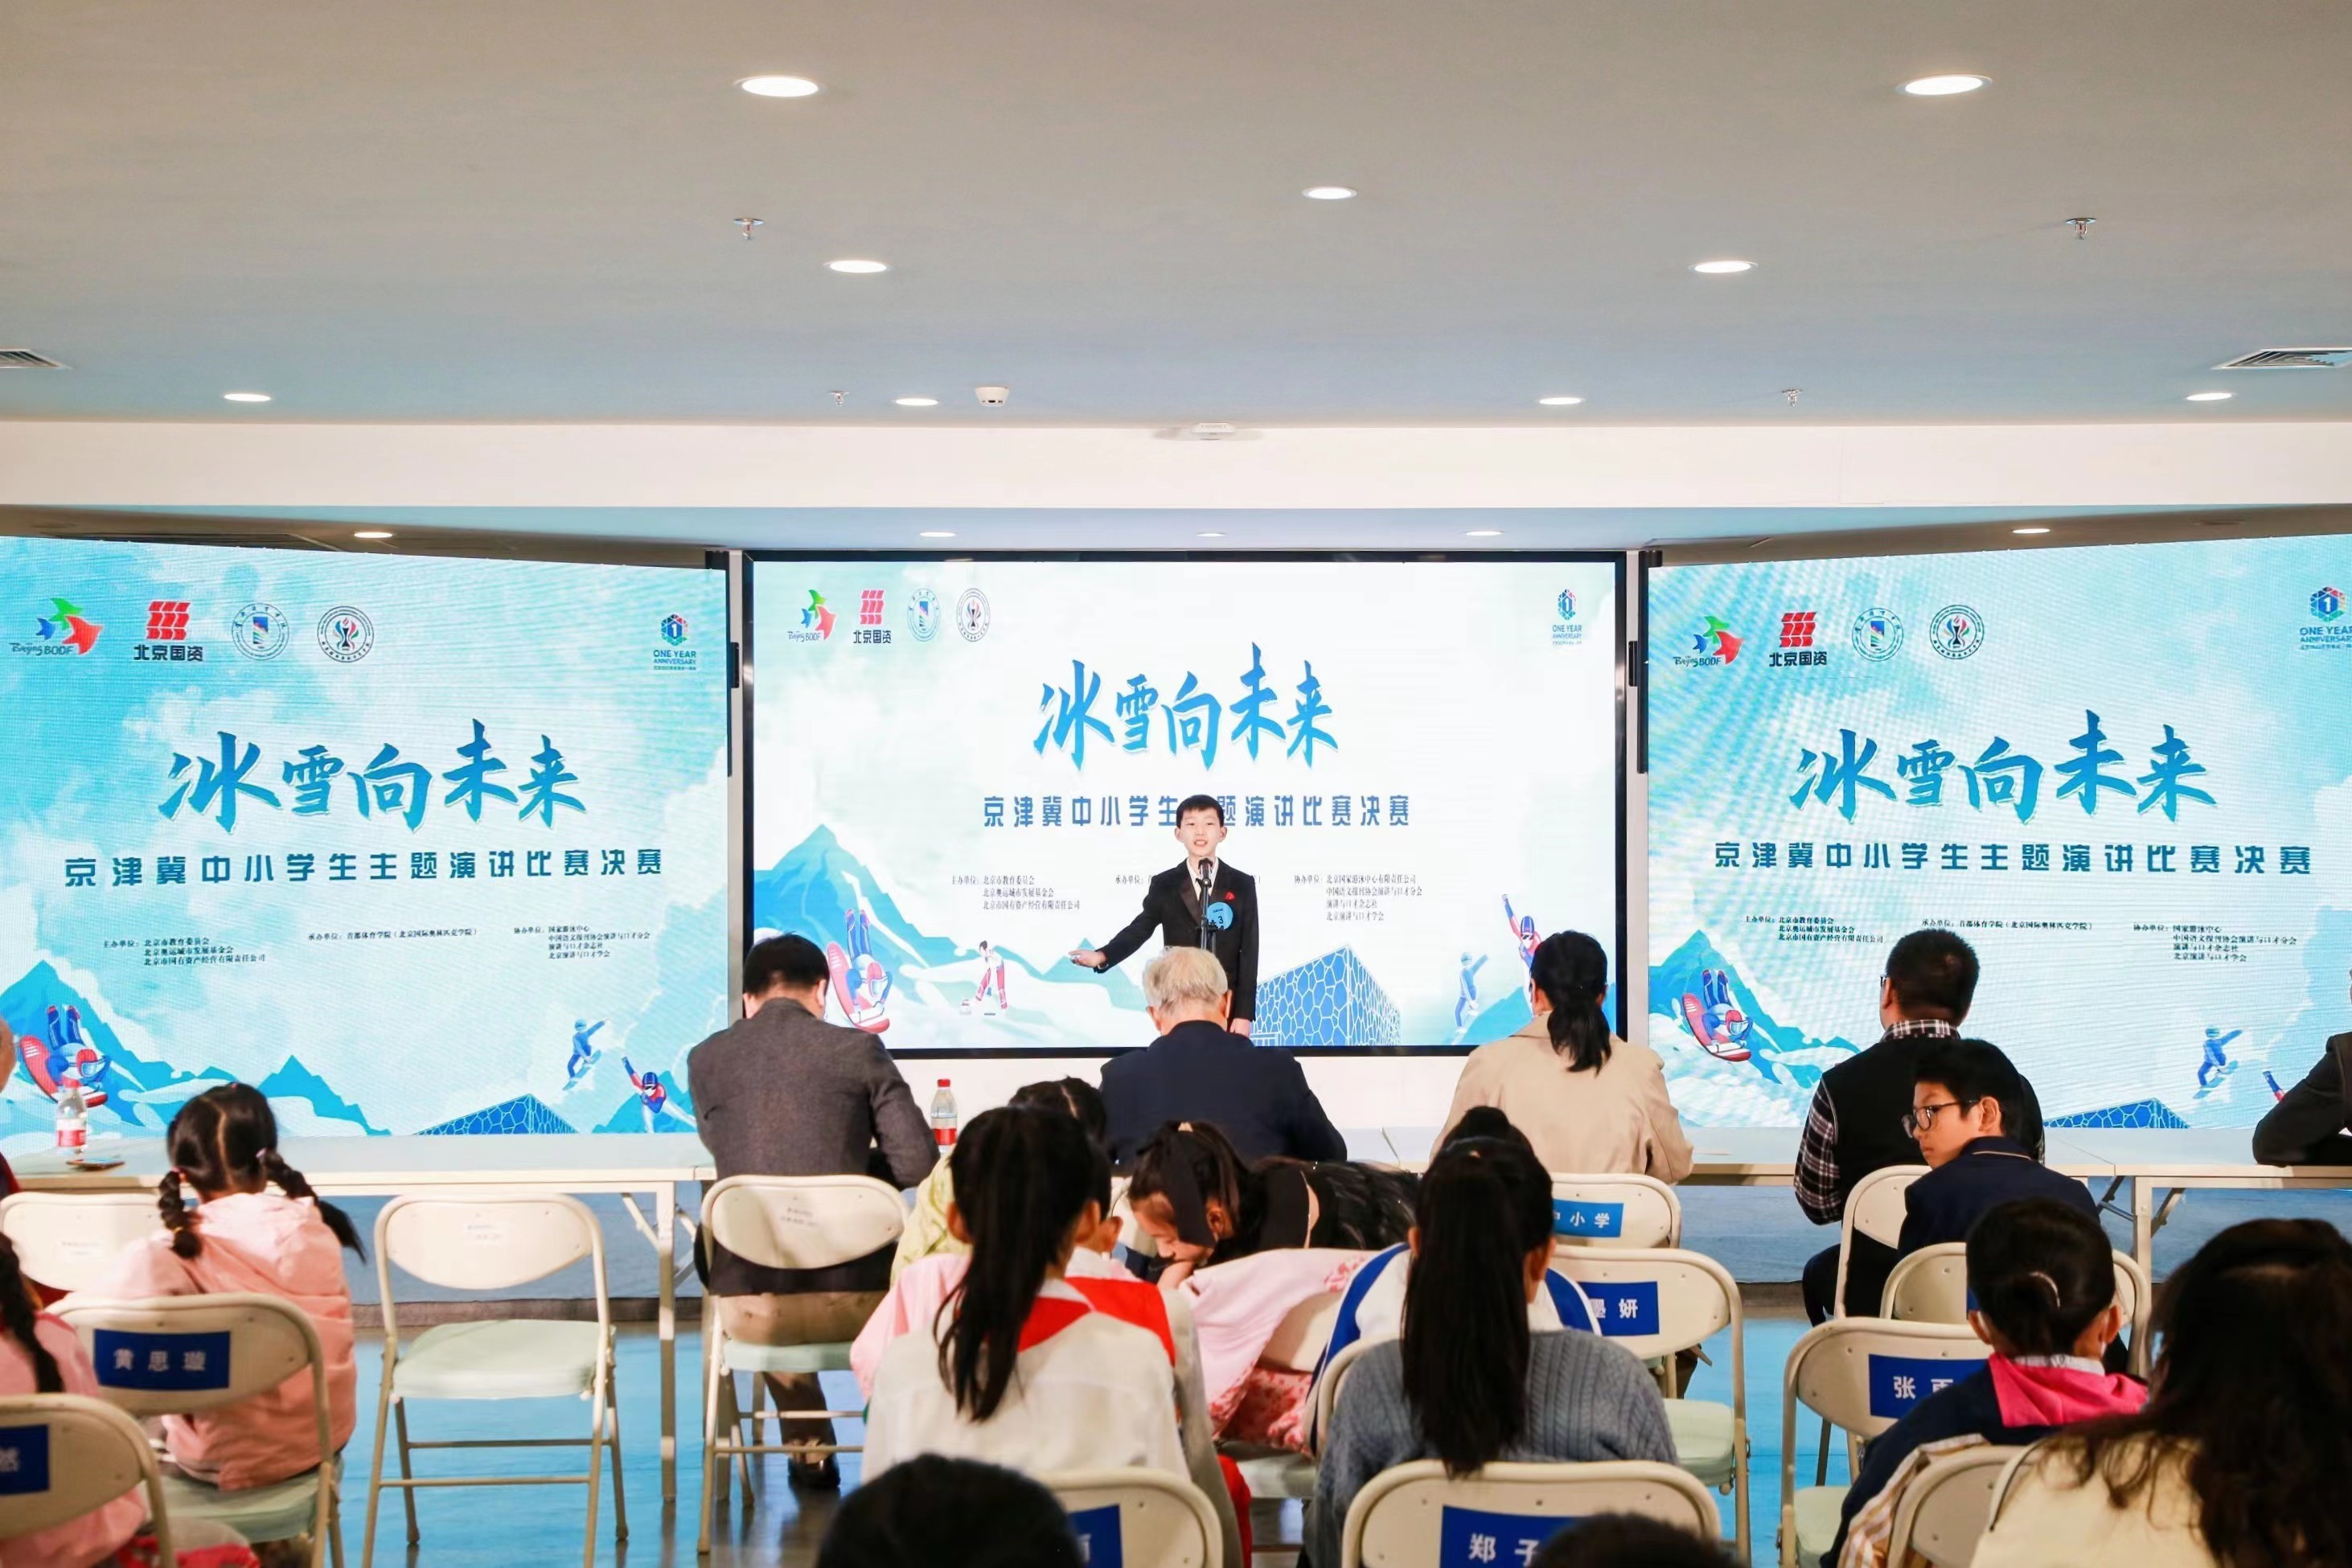 “冰雪向未来”――京津冀中小学生主题演讲比赛决赛现场。主办方供图。